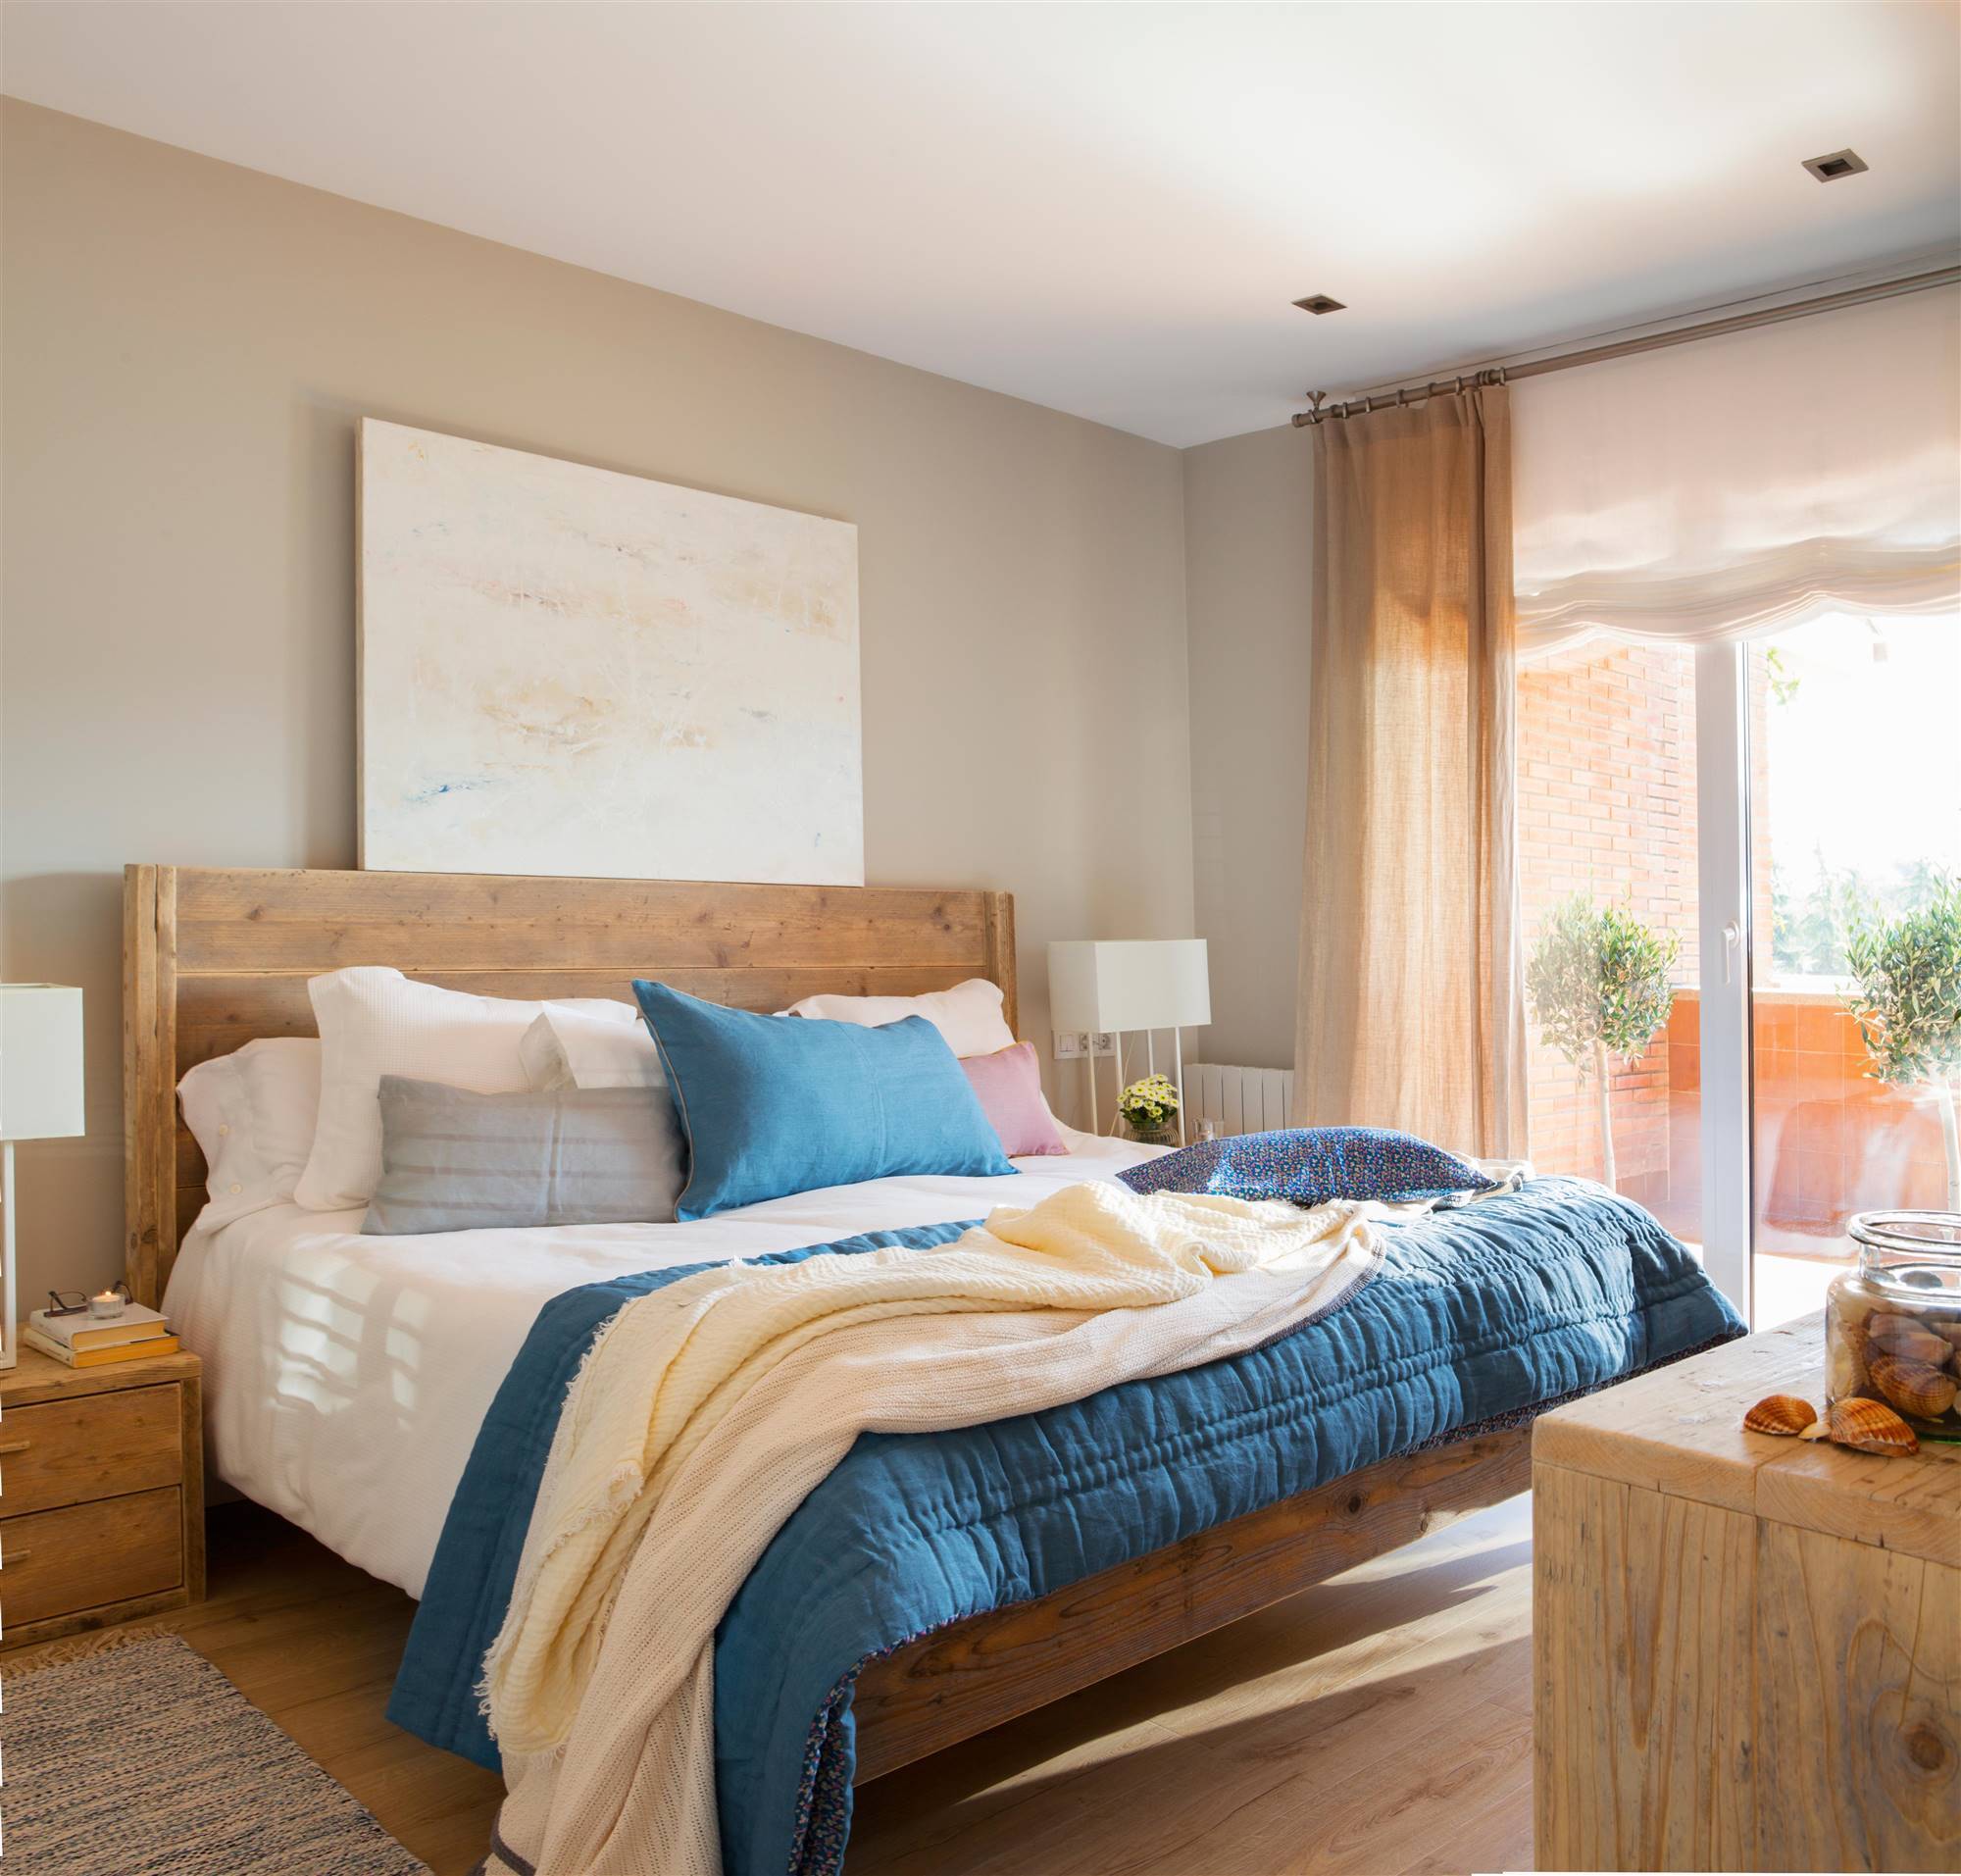 Dormitorio con muebles de madera y cabecero realizado con una puerta antigua de madera maciza.